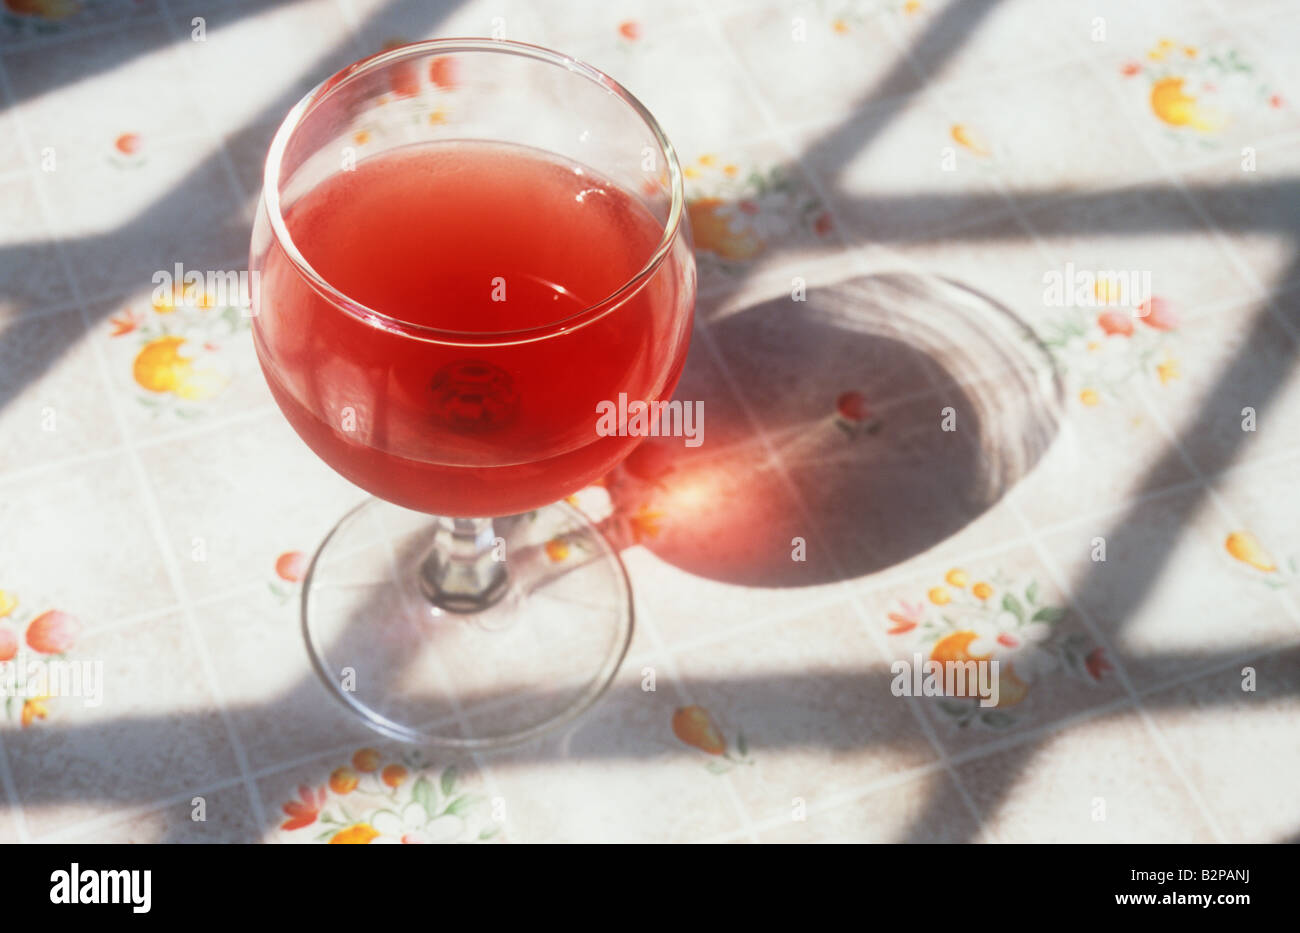 Weinglas mit roten Wein oder Fruchtsaft auf blumige Tischdecke und eigenen  Schatten zwischen den Schatten der Diamant verbleit Fenster Stockfotografie  - Alamy